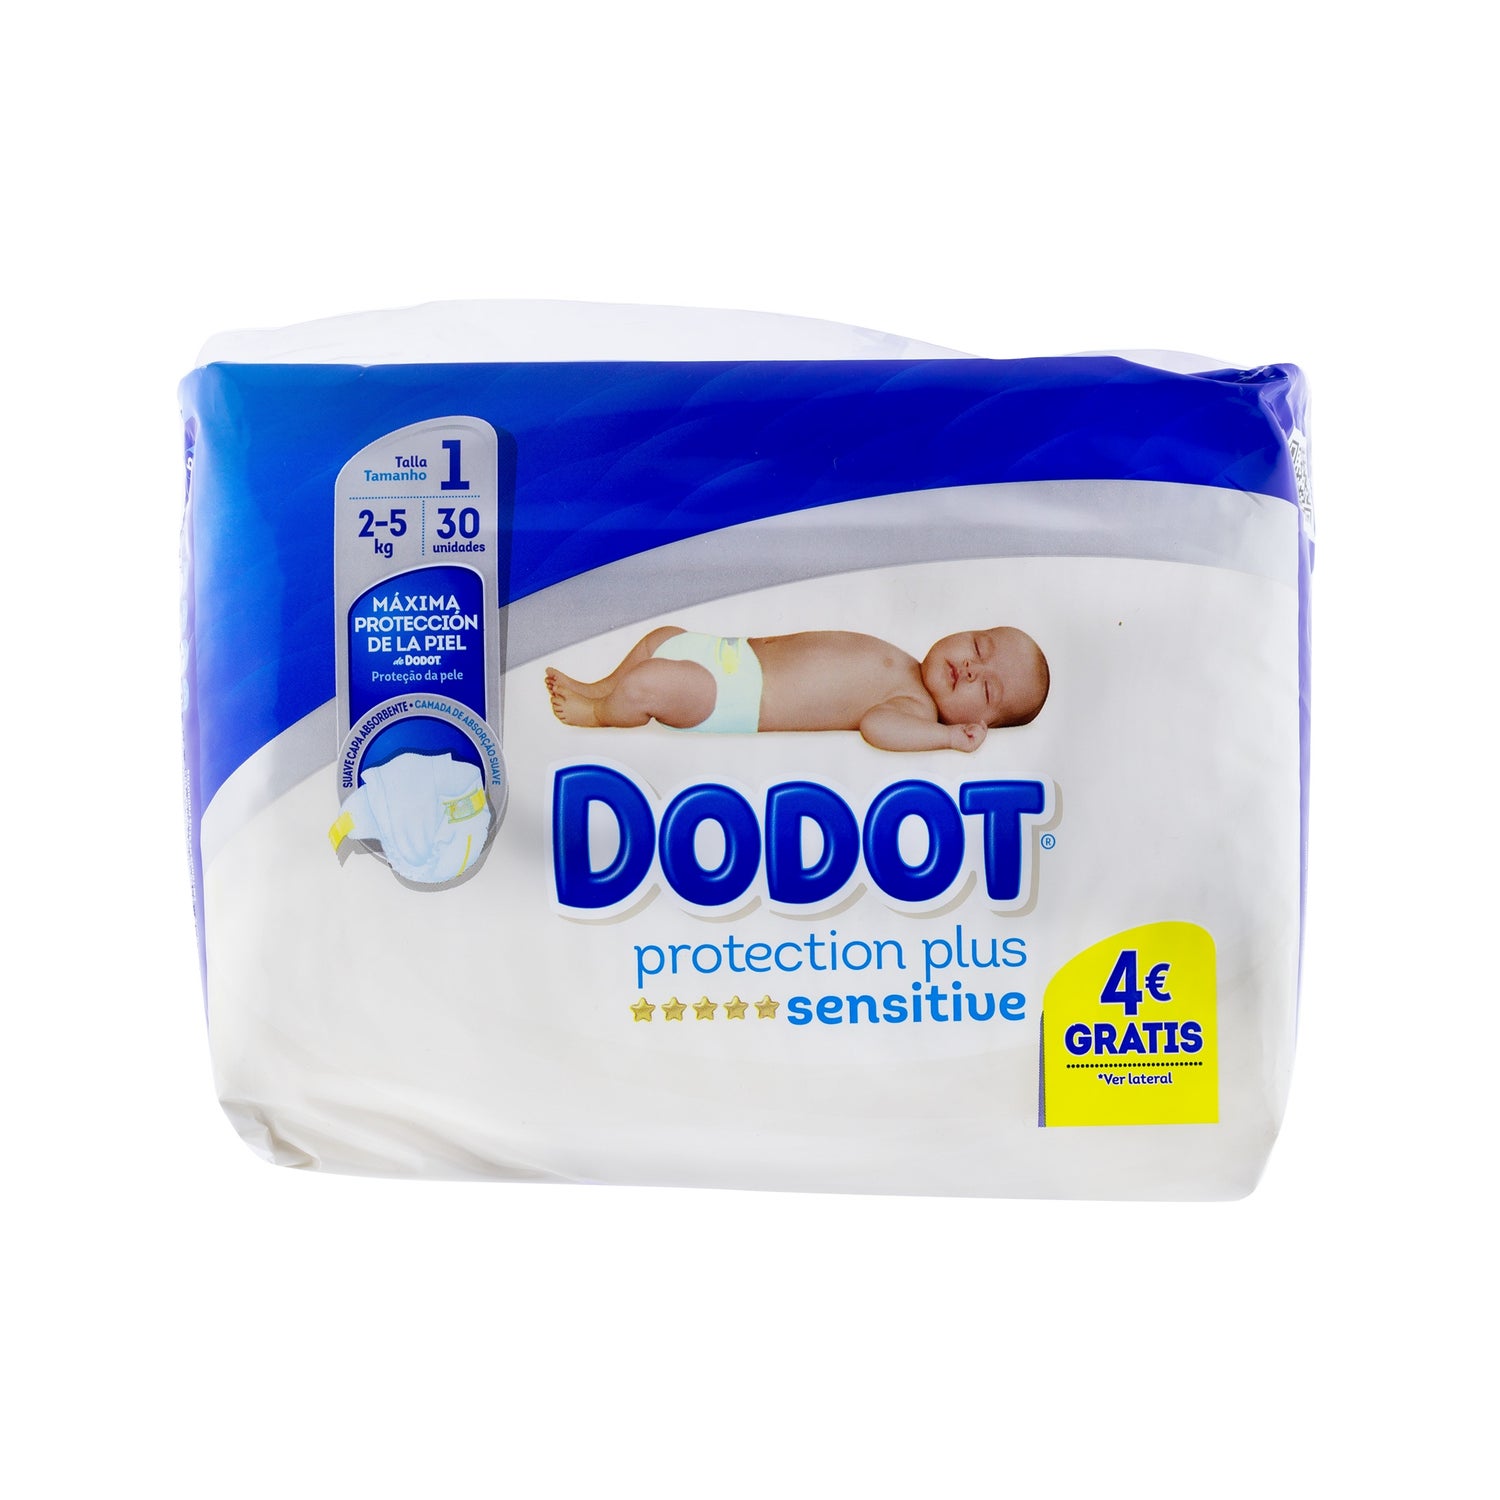 dodot protection plus sensitive t1 2 5kg 30uds